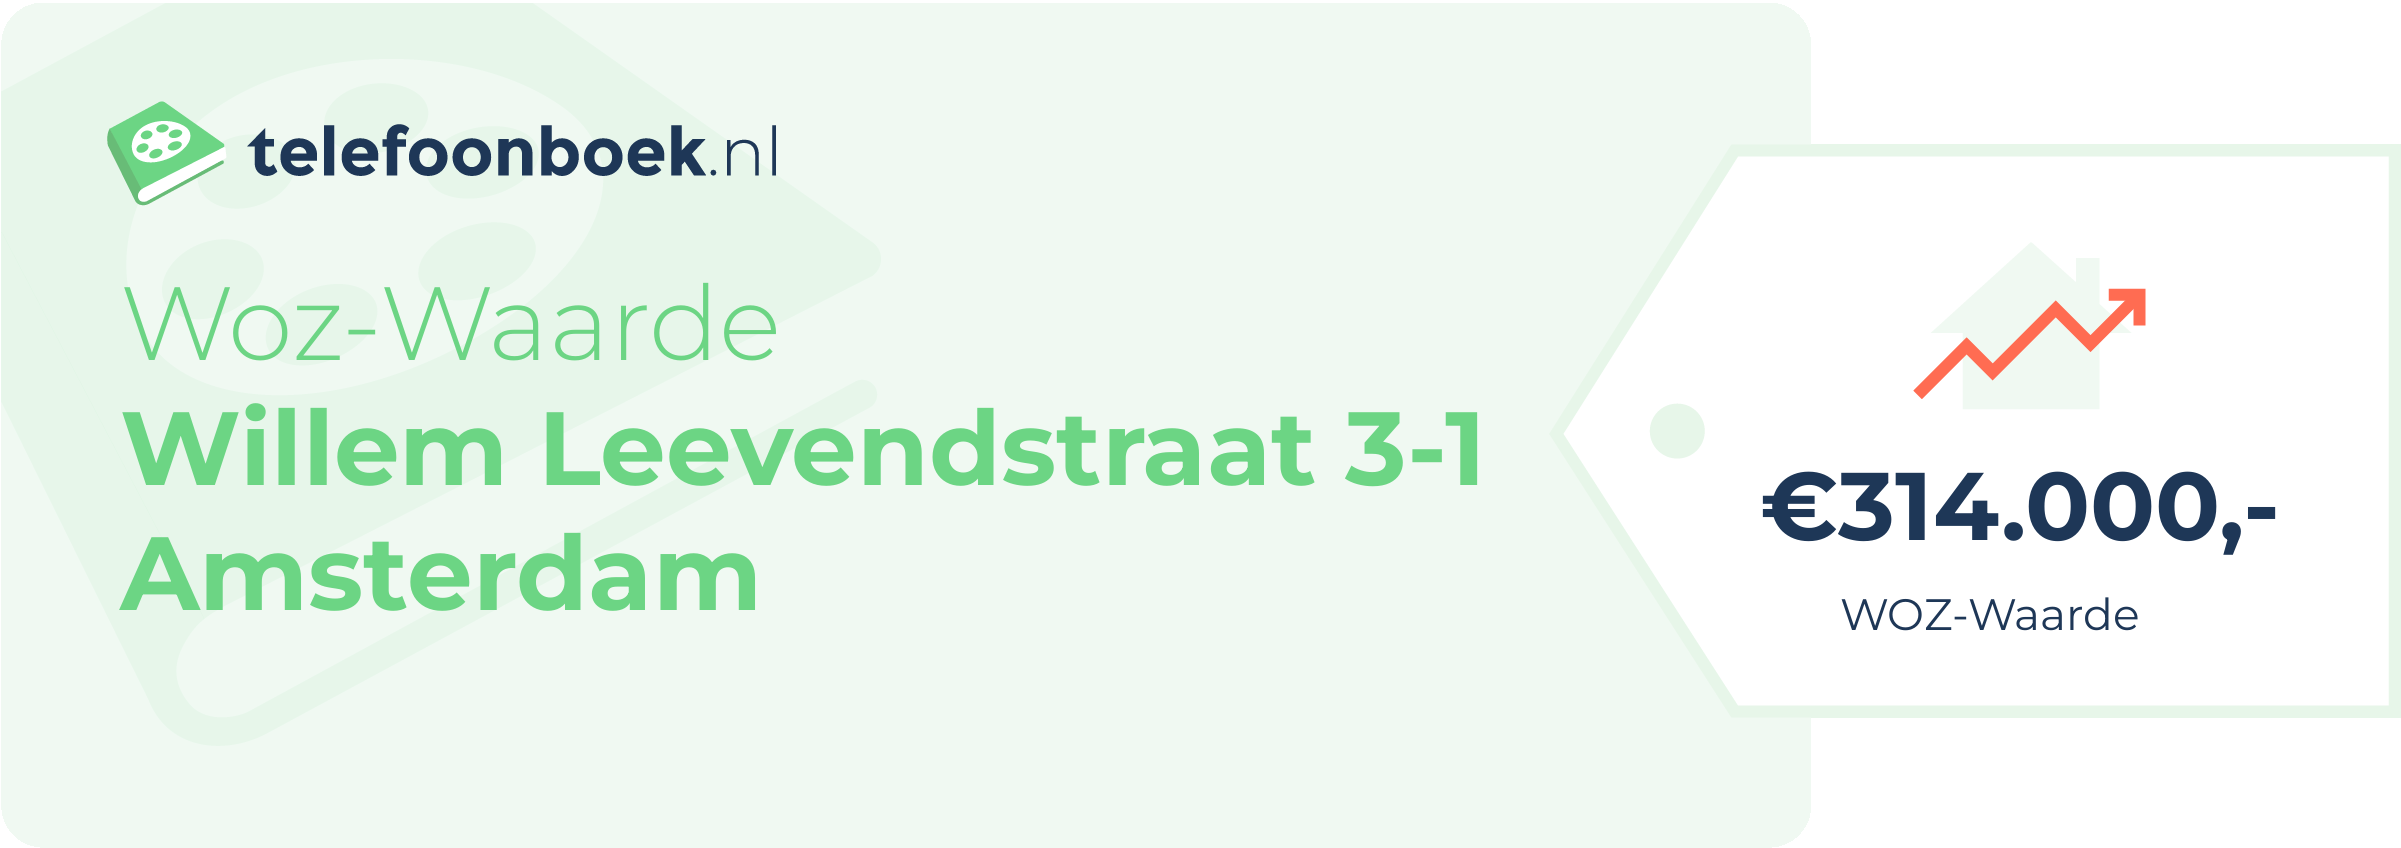 WOZ-waarde Willem Leevendstraat 3-1 Amsterdam